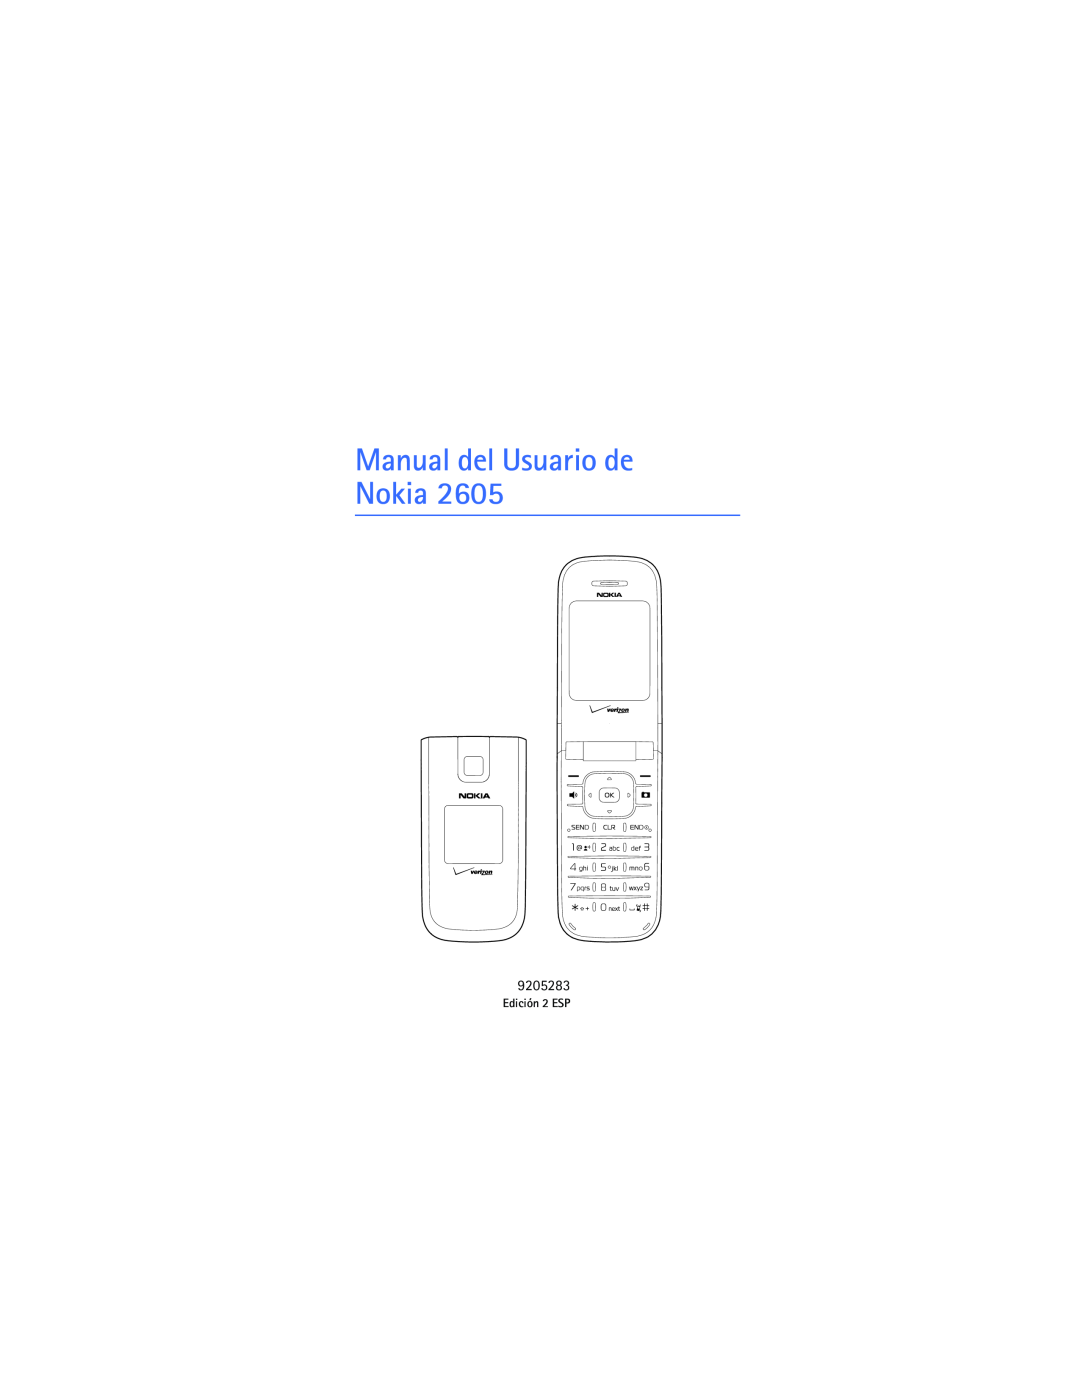 Verizon 2605 manual Manual del Usuario de Nokia, Edición 2 ESP 